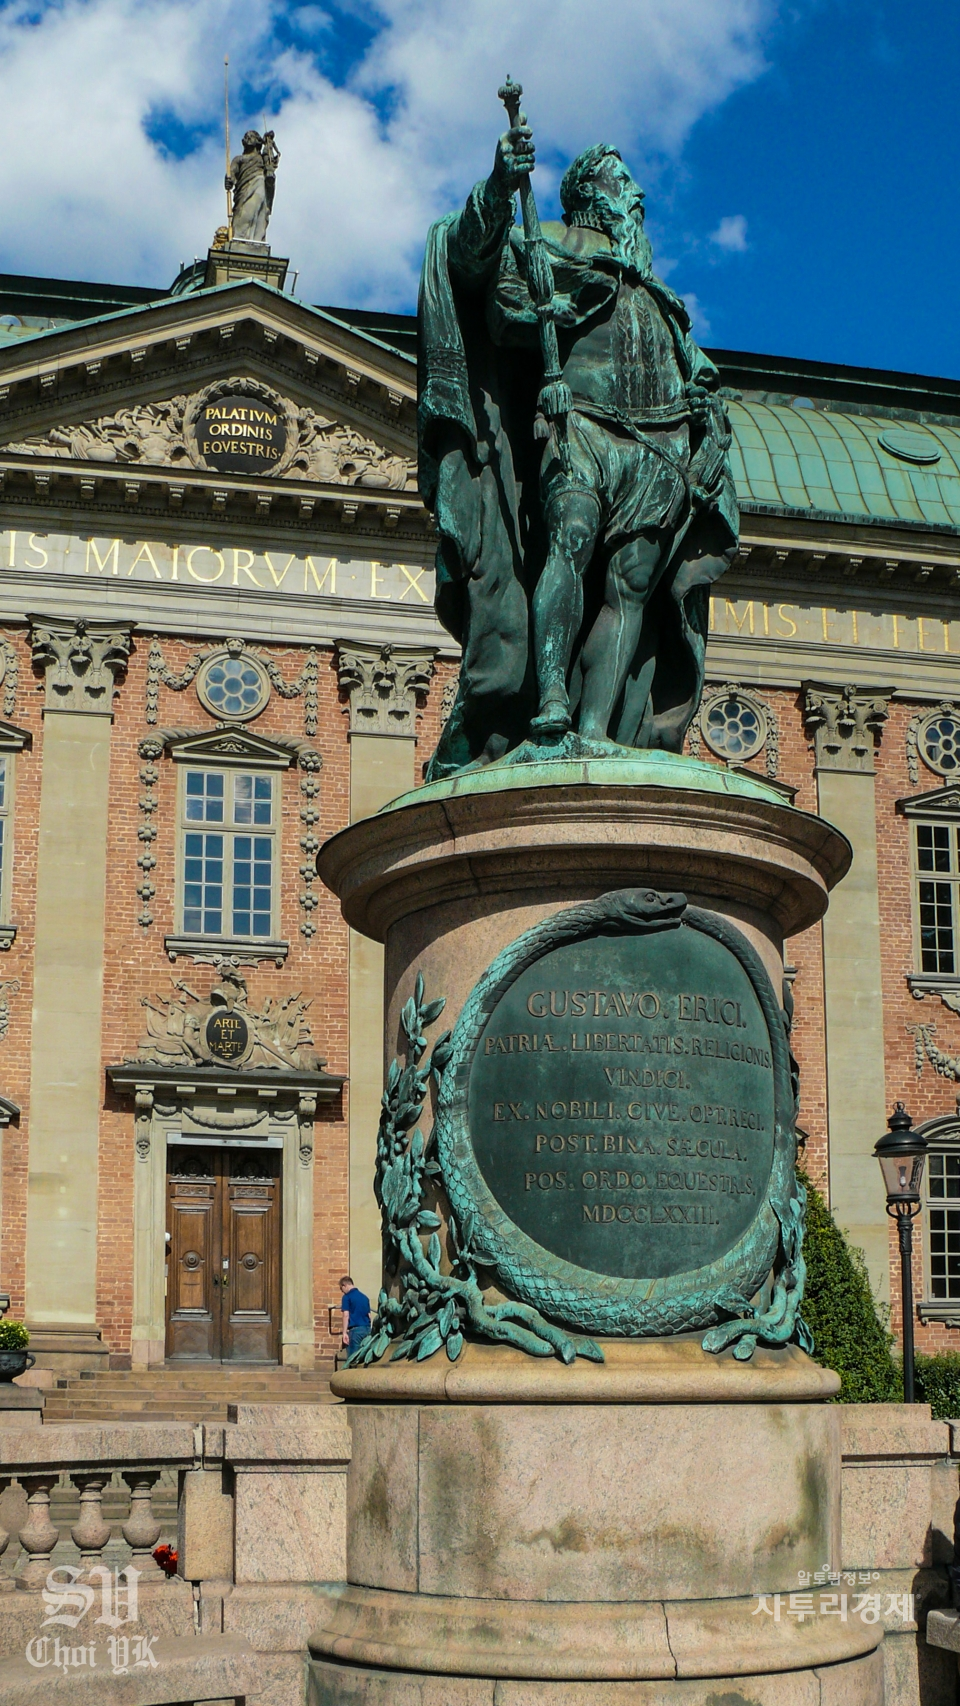 귀족의 집(Riddarhuset) 건물앞의 동상은 16세기 중반 이름을 떨친 위대한 국왕 구스타브 1세 바사(Gustav I Vasa)의 동상이다. 18세기 초 칼 12세(Karl XII)가 나르바(Narva) 전투에서 빼잇은 대포로 동상을 만들었다고 한다. 무개가 약 11톤(ton) 정도이다. Photo by 최영규